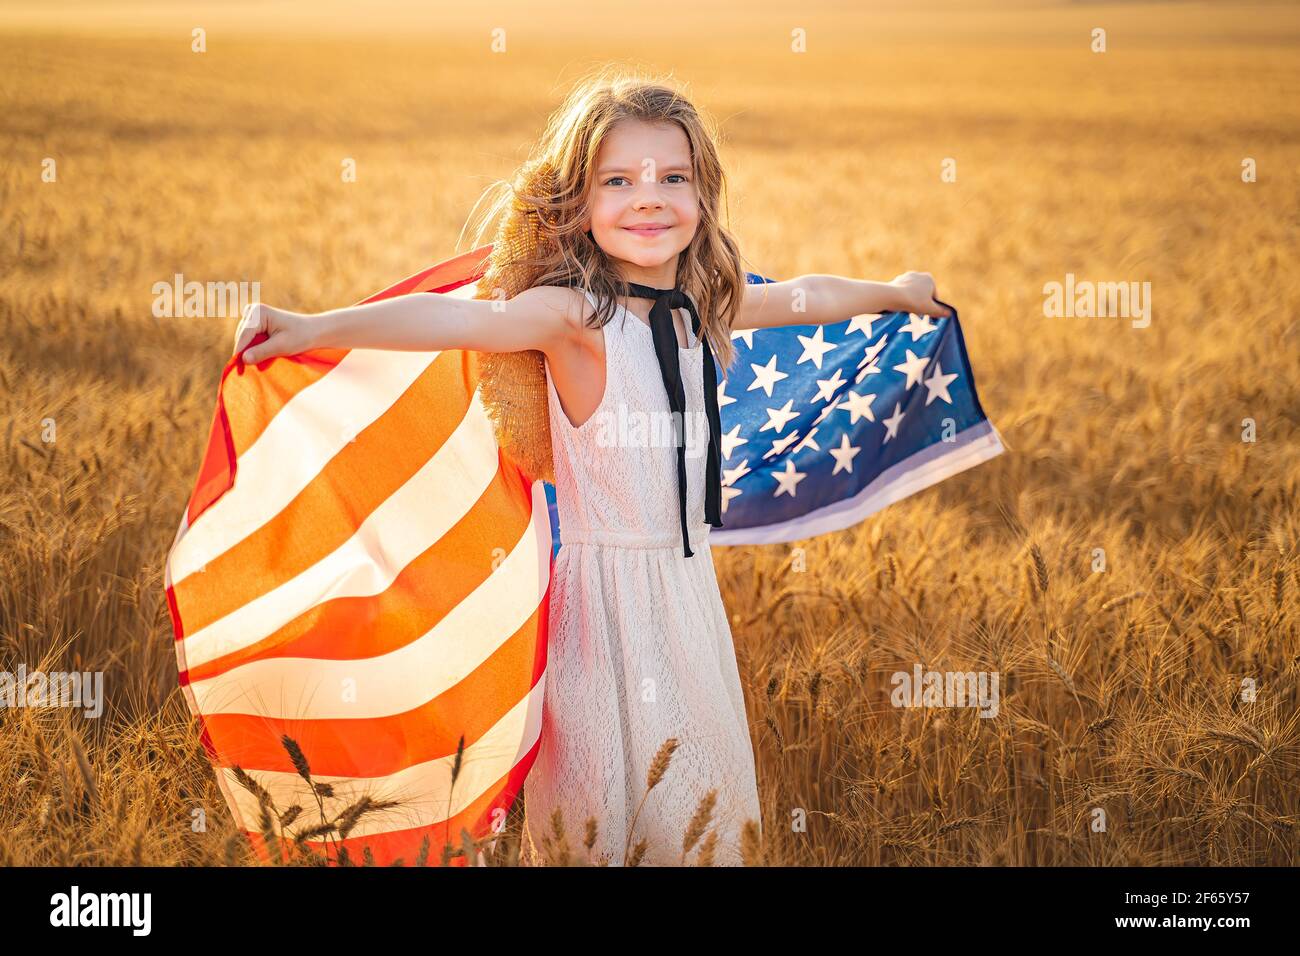 Liebenswert patriotischen Mädchen in weißem Kleid trägt eine amerikanische  Flagge Stockfotografie - Alamy